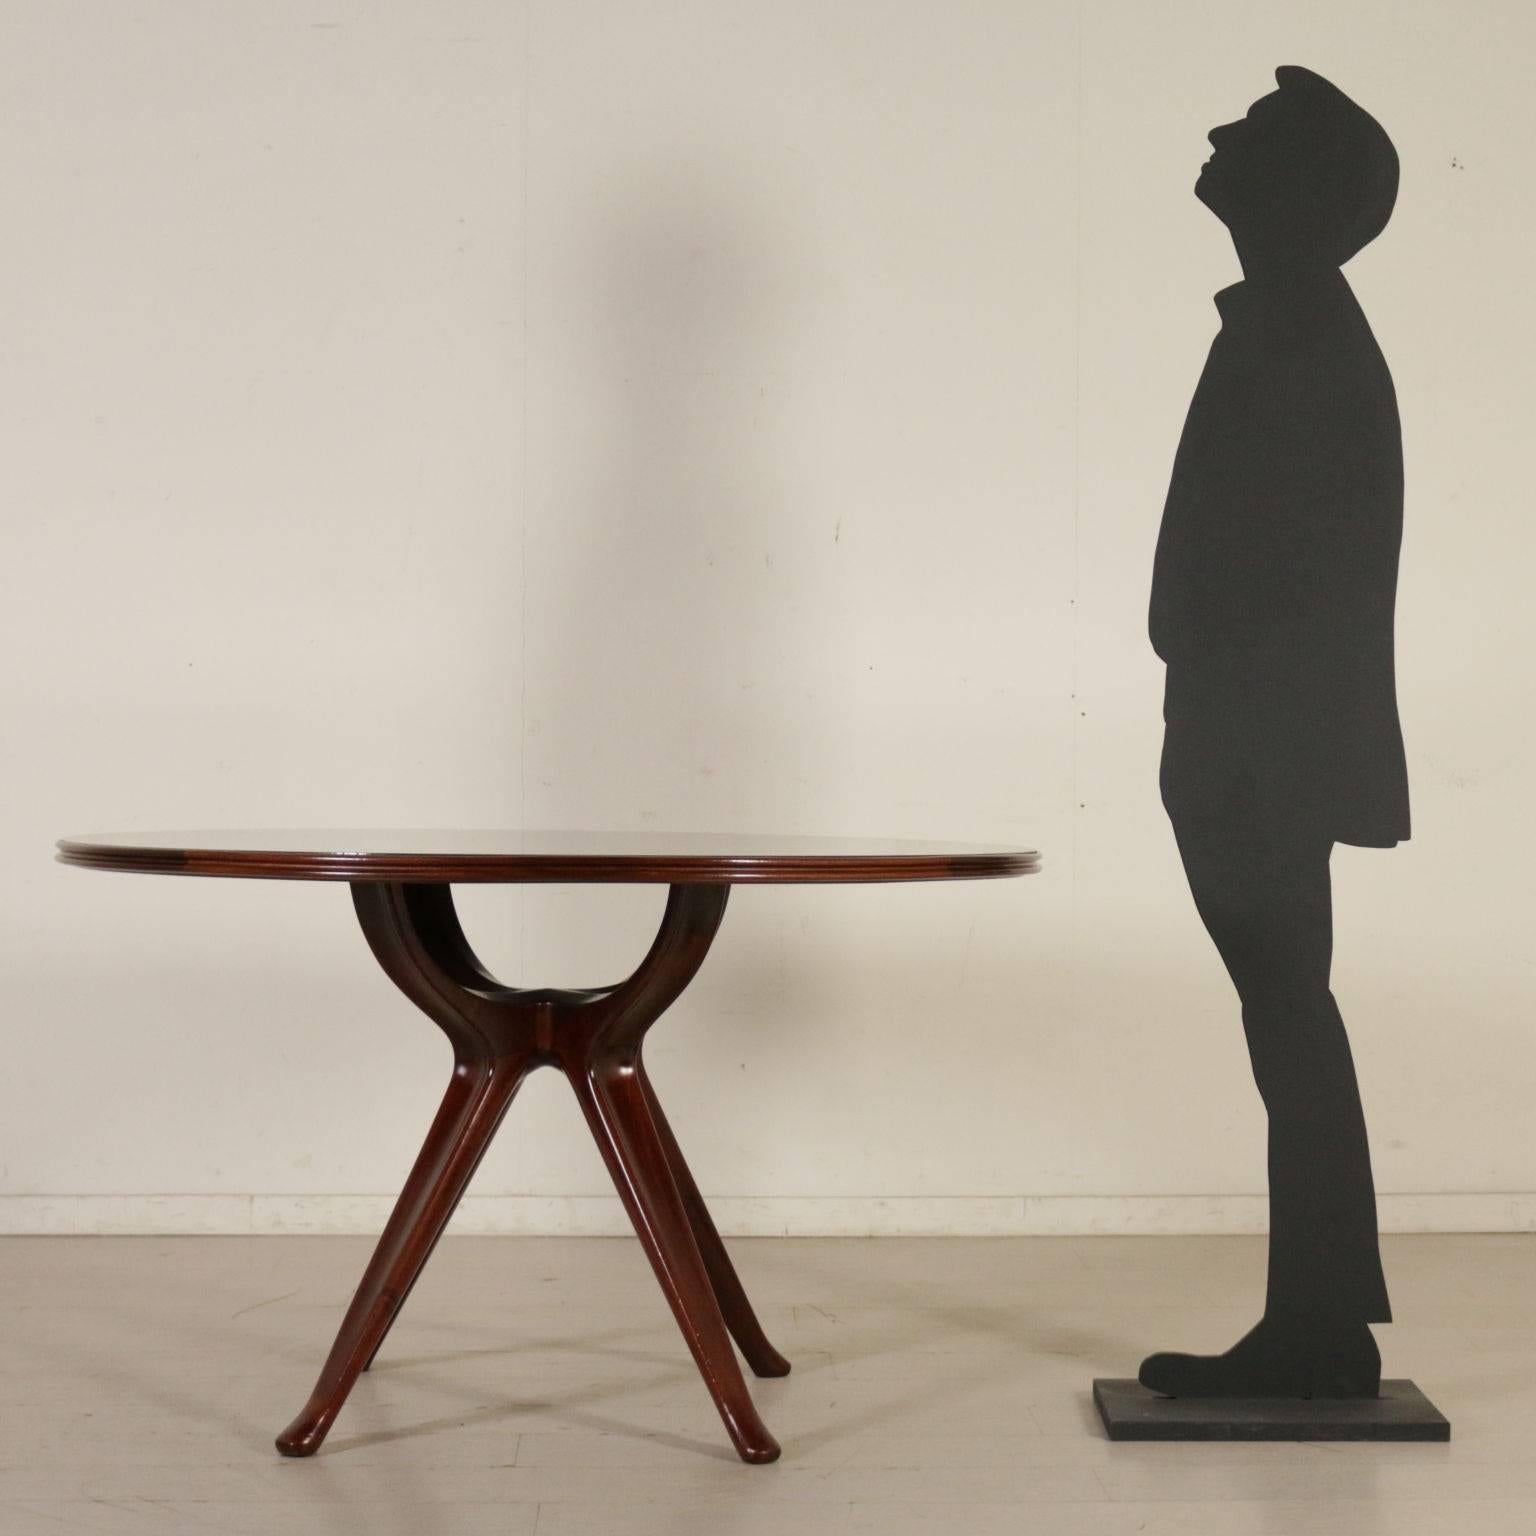 A table designed by Osvaldo Borsani (1911-1985), mahogany, retro treated glass. Manufactured in Italy, 1950s.